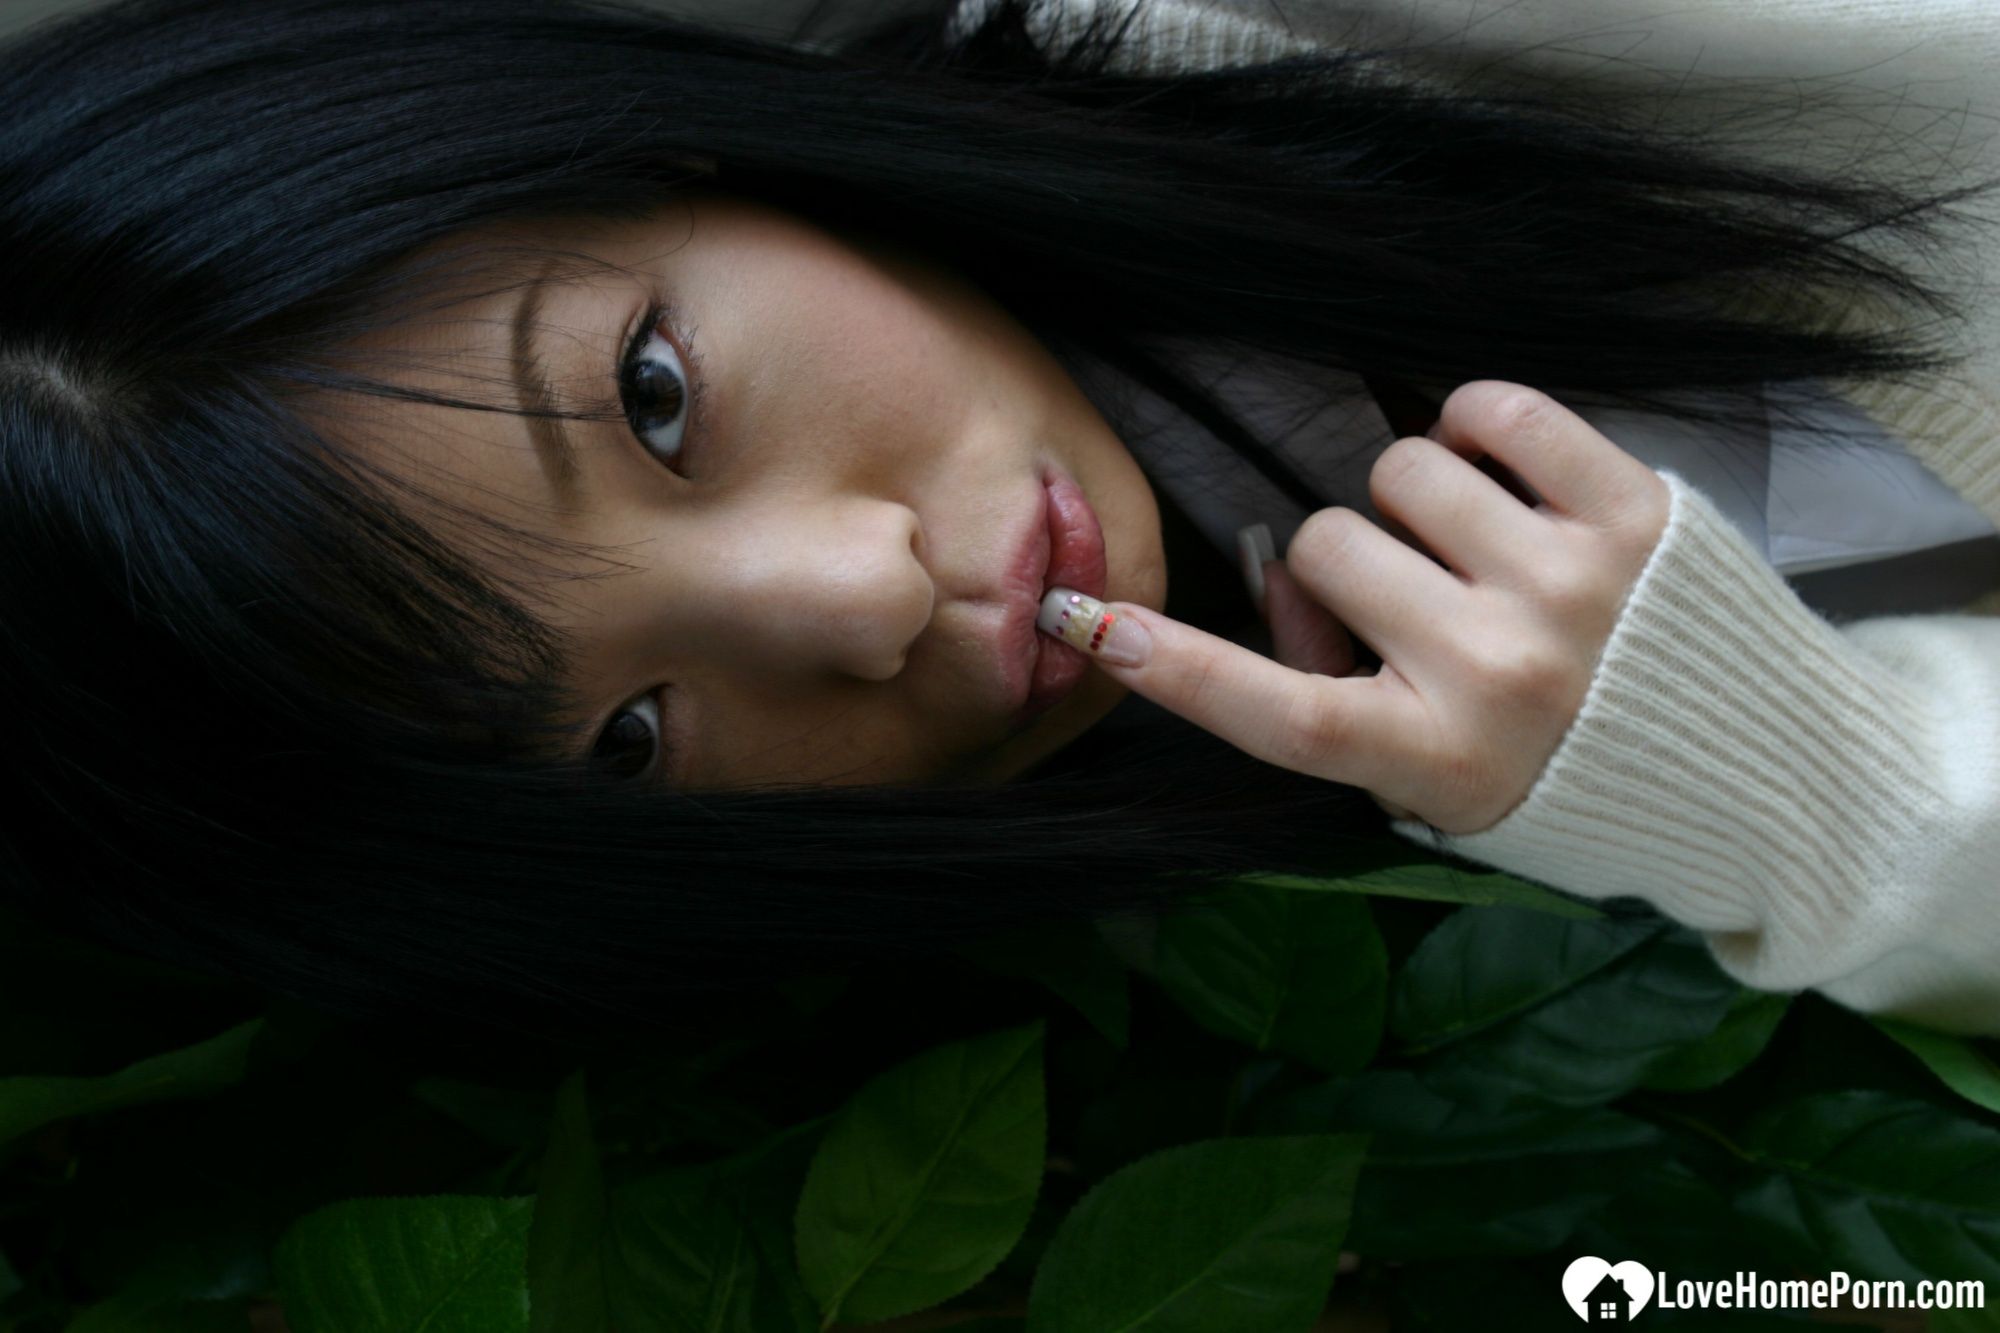 Asian schoolgirl looks for some online exposure #18